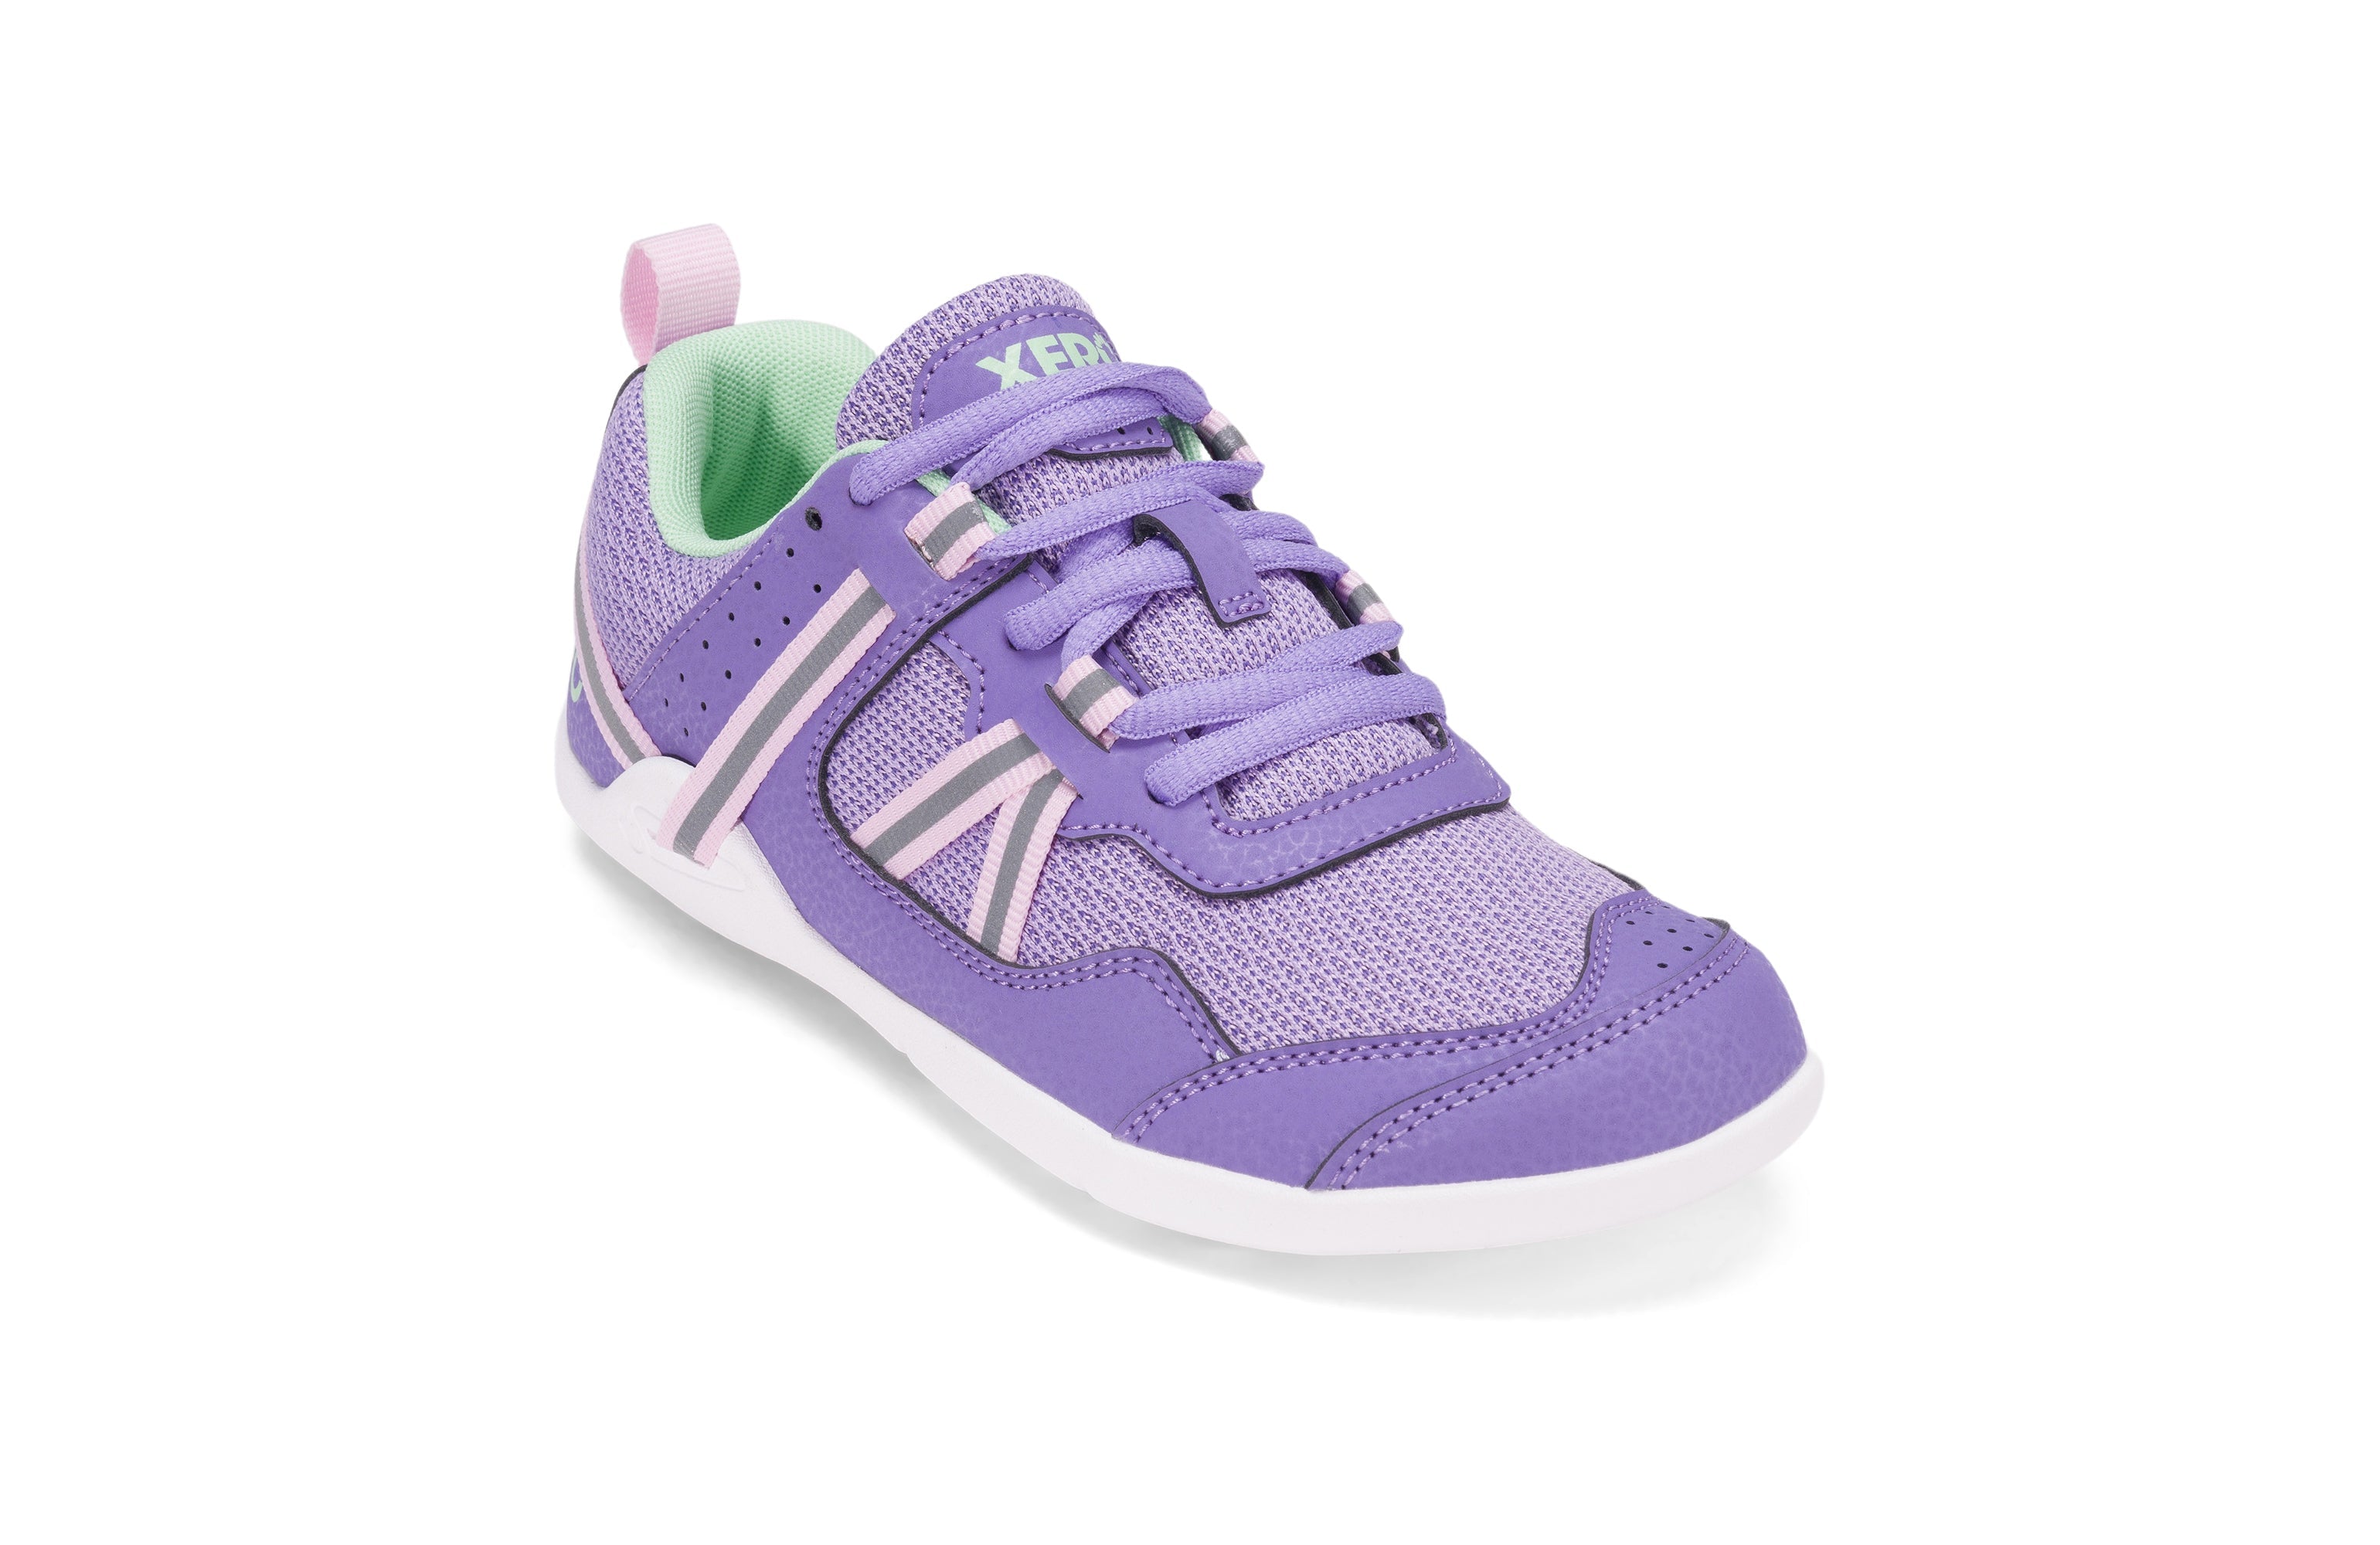 Xero Shoes Prio Kids barfods træningssko/sneakers til børn i farven lilac / pink, vinklet